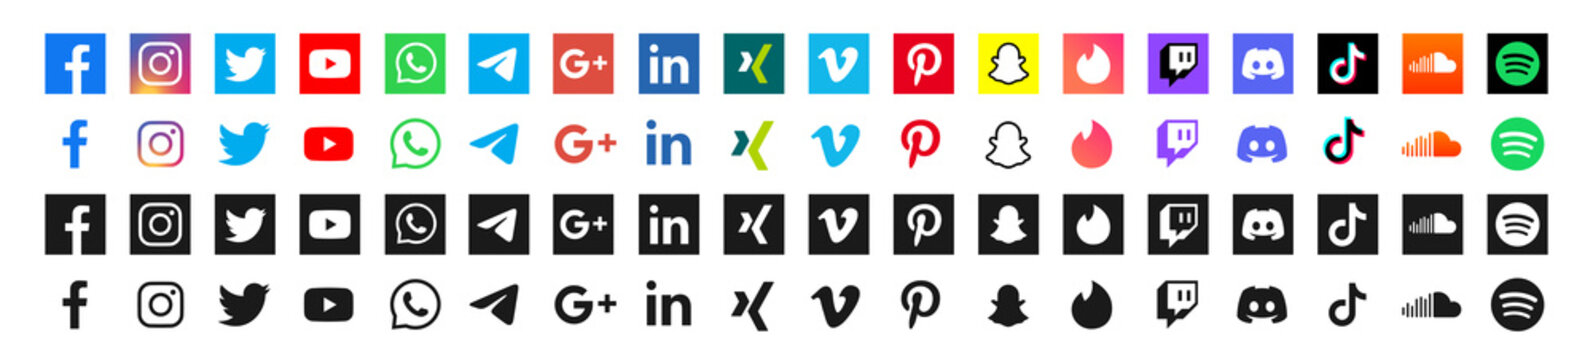 social media vector logo icon set